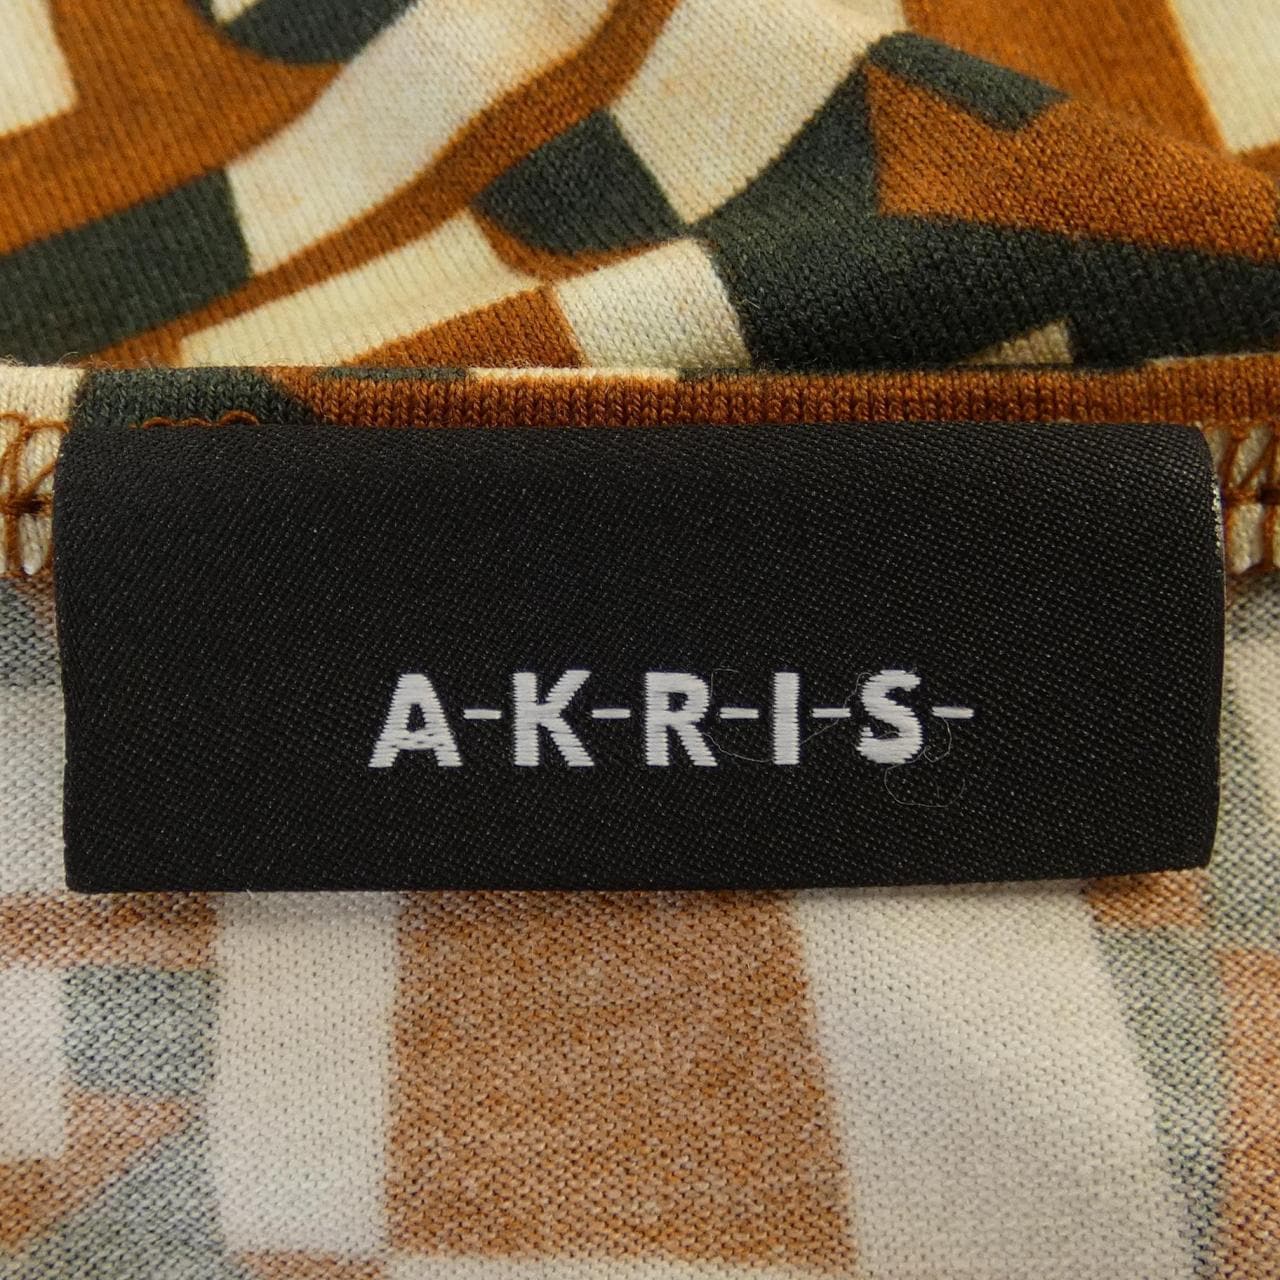 Aclis AKRIS S/S衬衫